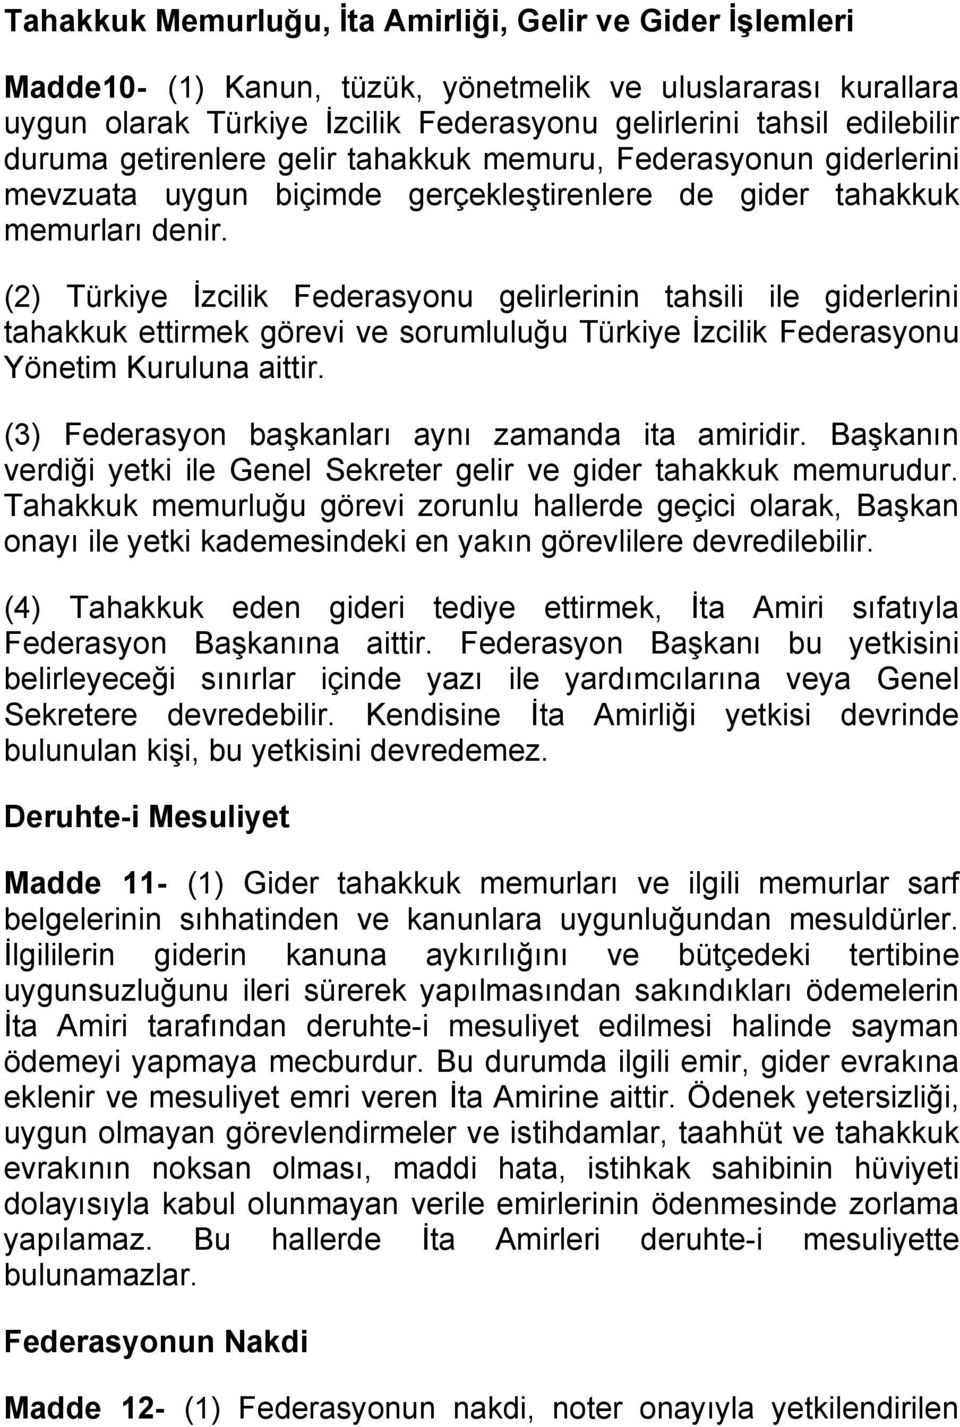 (2) Türkiye İzcilik Federasyonu gelirlerinin tahsili ile giderlerini tahakkuk ettirmek görevi ve sorumluluğu Türkiye İzcilik Federasyonu Yönetim Kuruluna aittir.